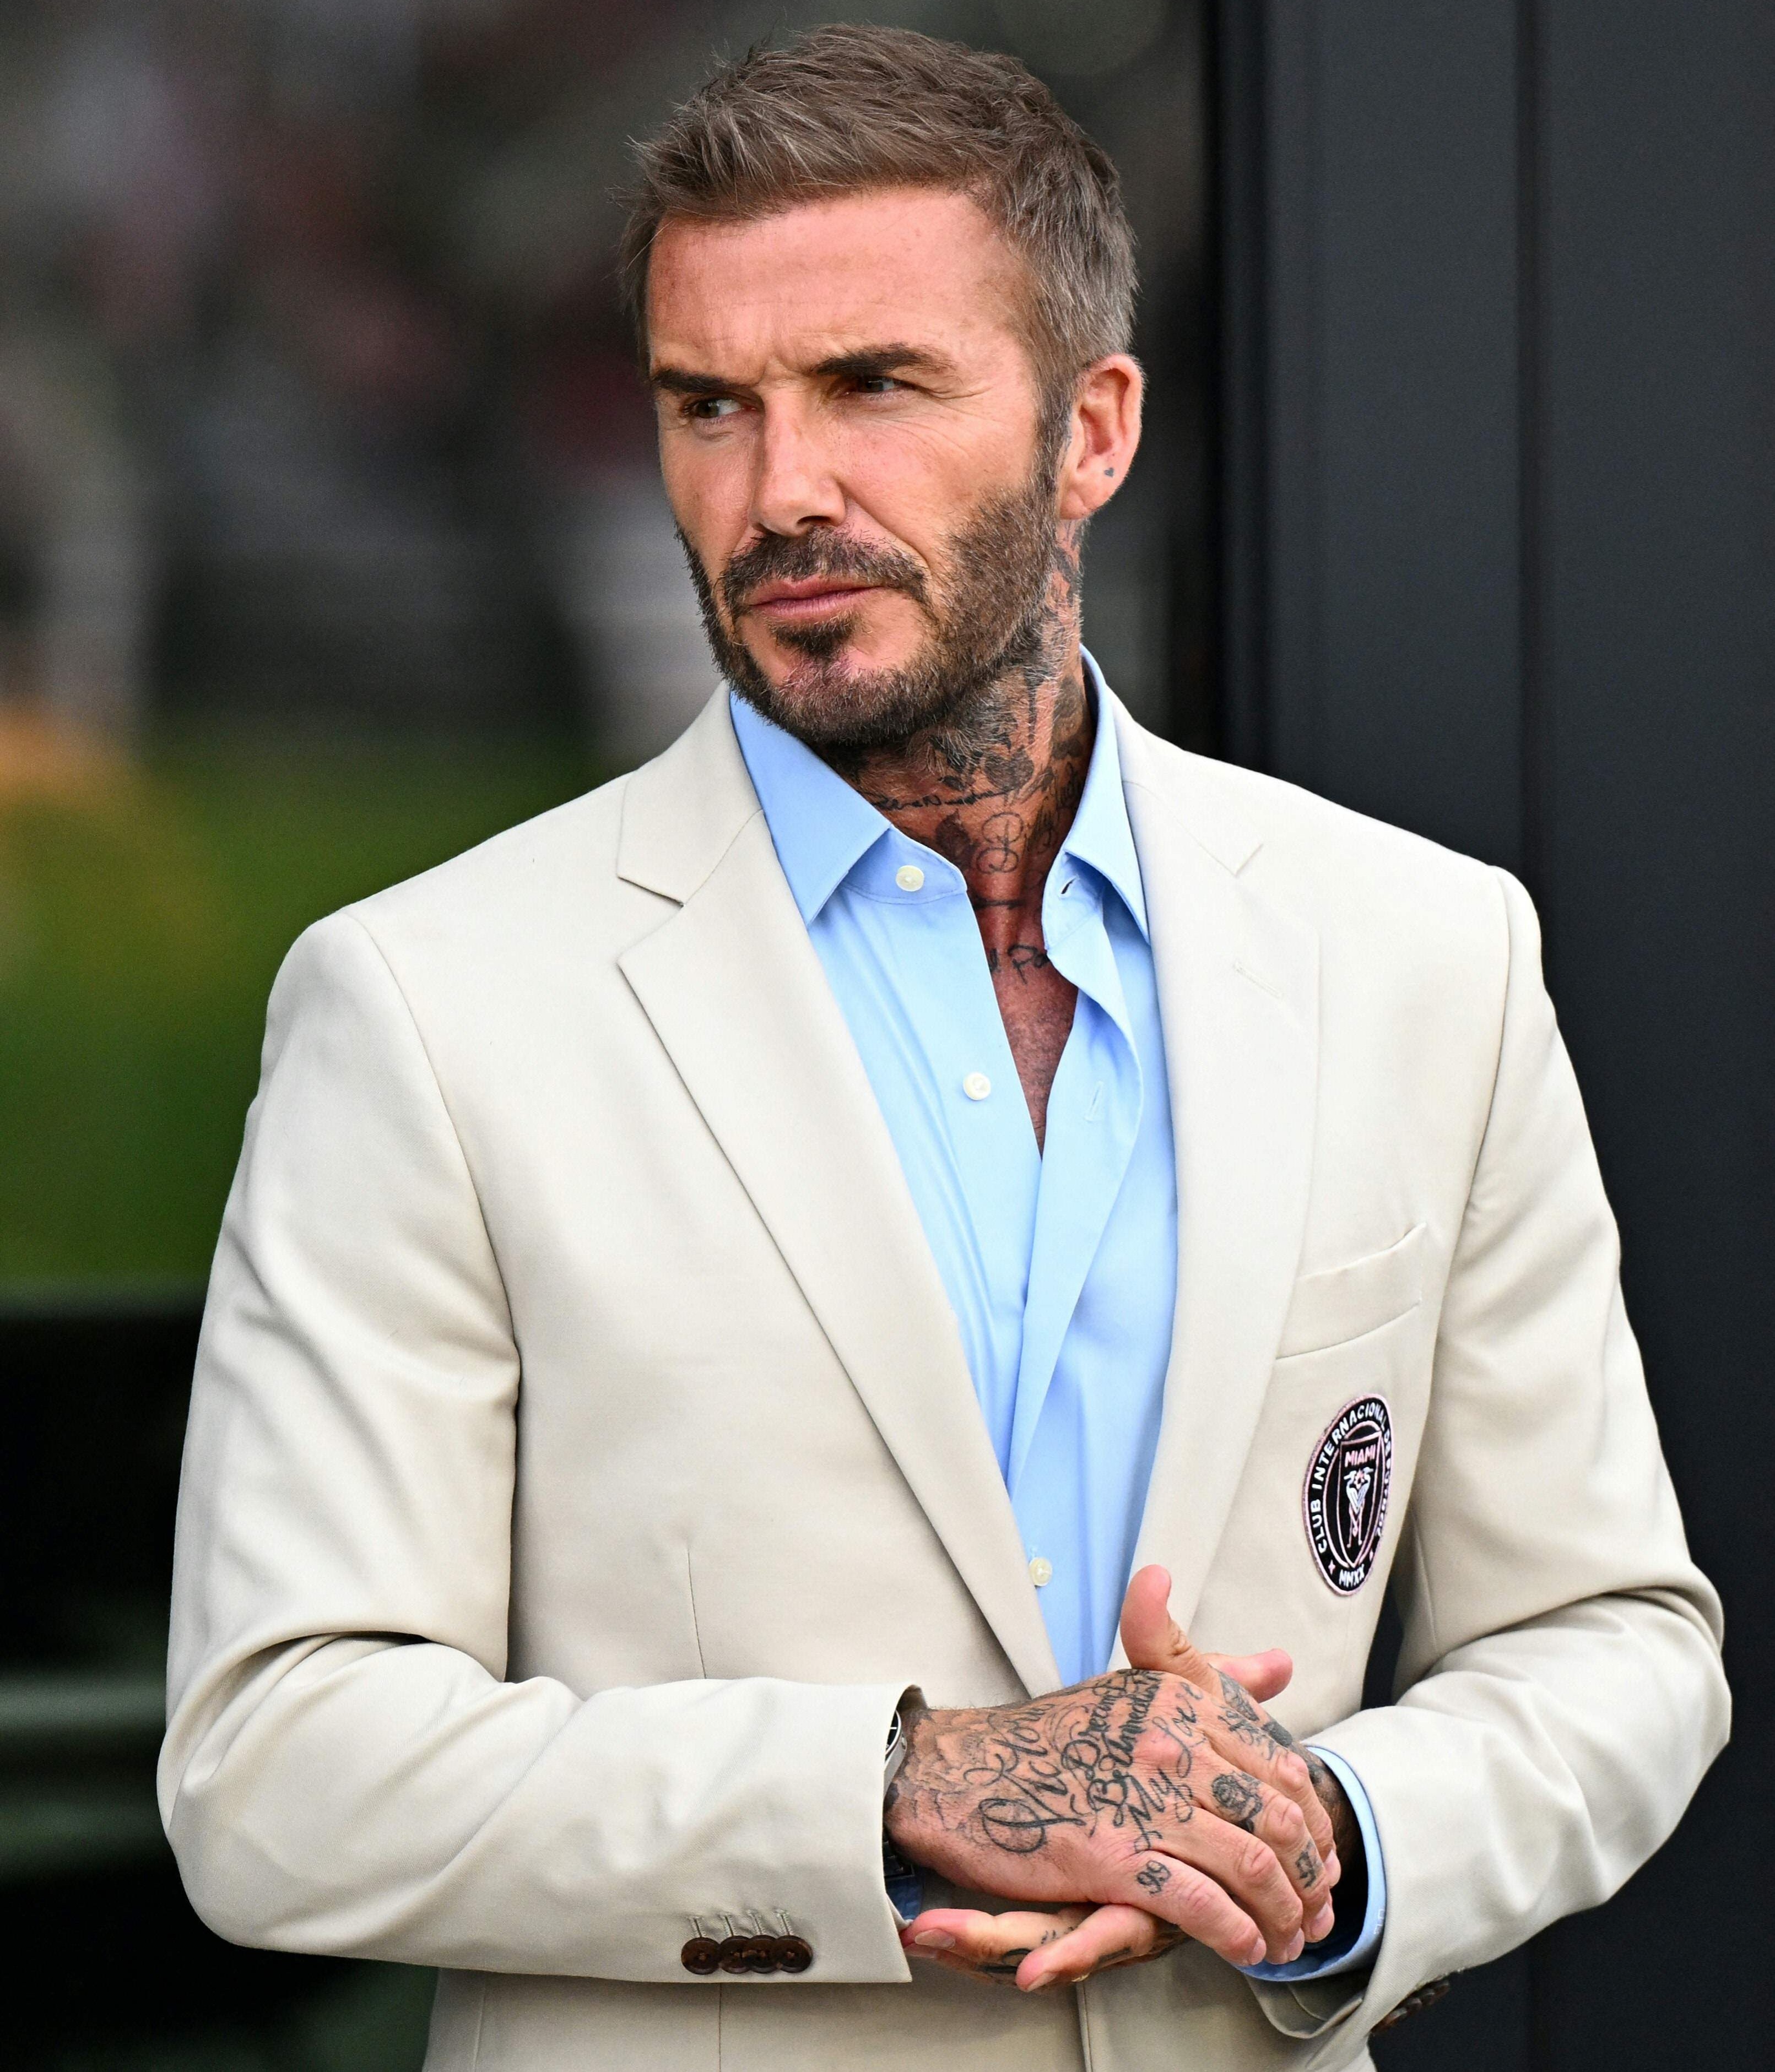 David Beckham traf die schwierige Entscheidung, seinen Kumpel Phil Neville zu entlassen und ihn durch den ehemaligen Barcelona-Trainer Gerardo Martino zu ersetzen